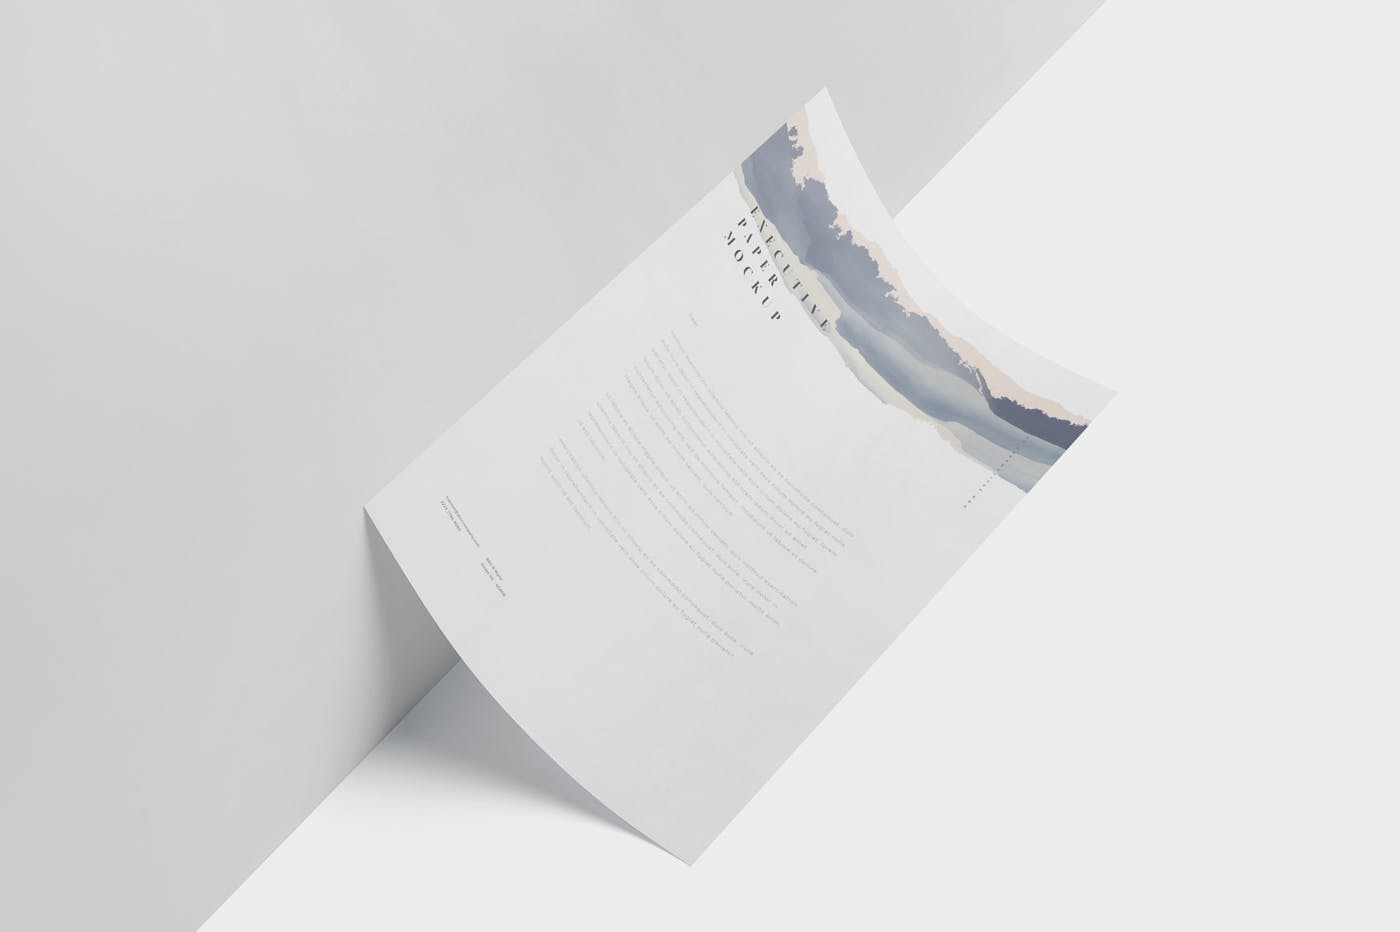 企业宣传单张设计效果图样机蚂蚁素材精选 Executive Paper Mockup – 7×10 Inch Size插图(3)